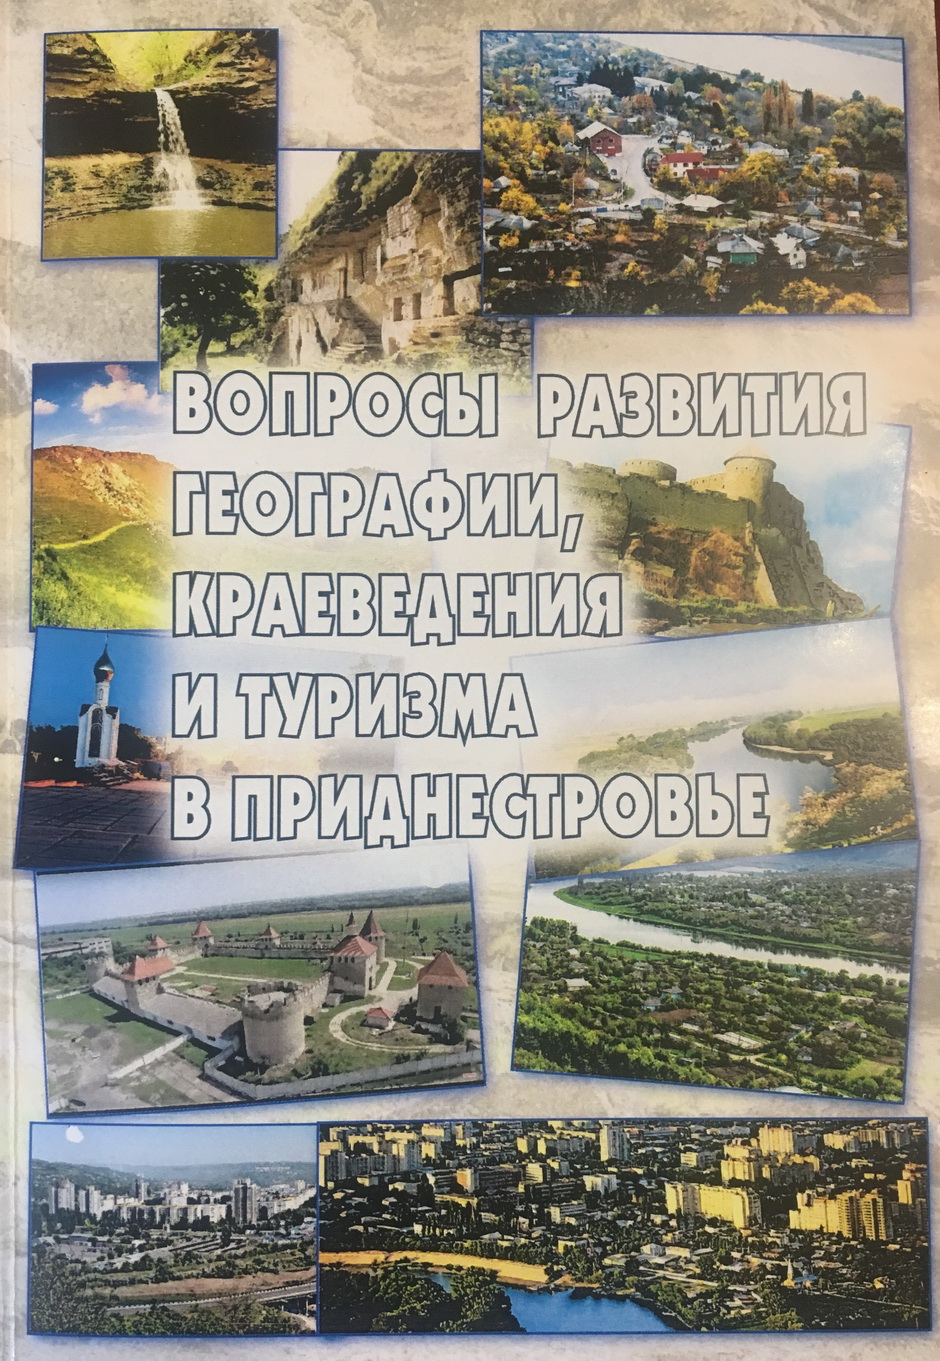 Вопросы развития географии, краеведения и туризма в Приднестровье - 2019